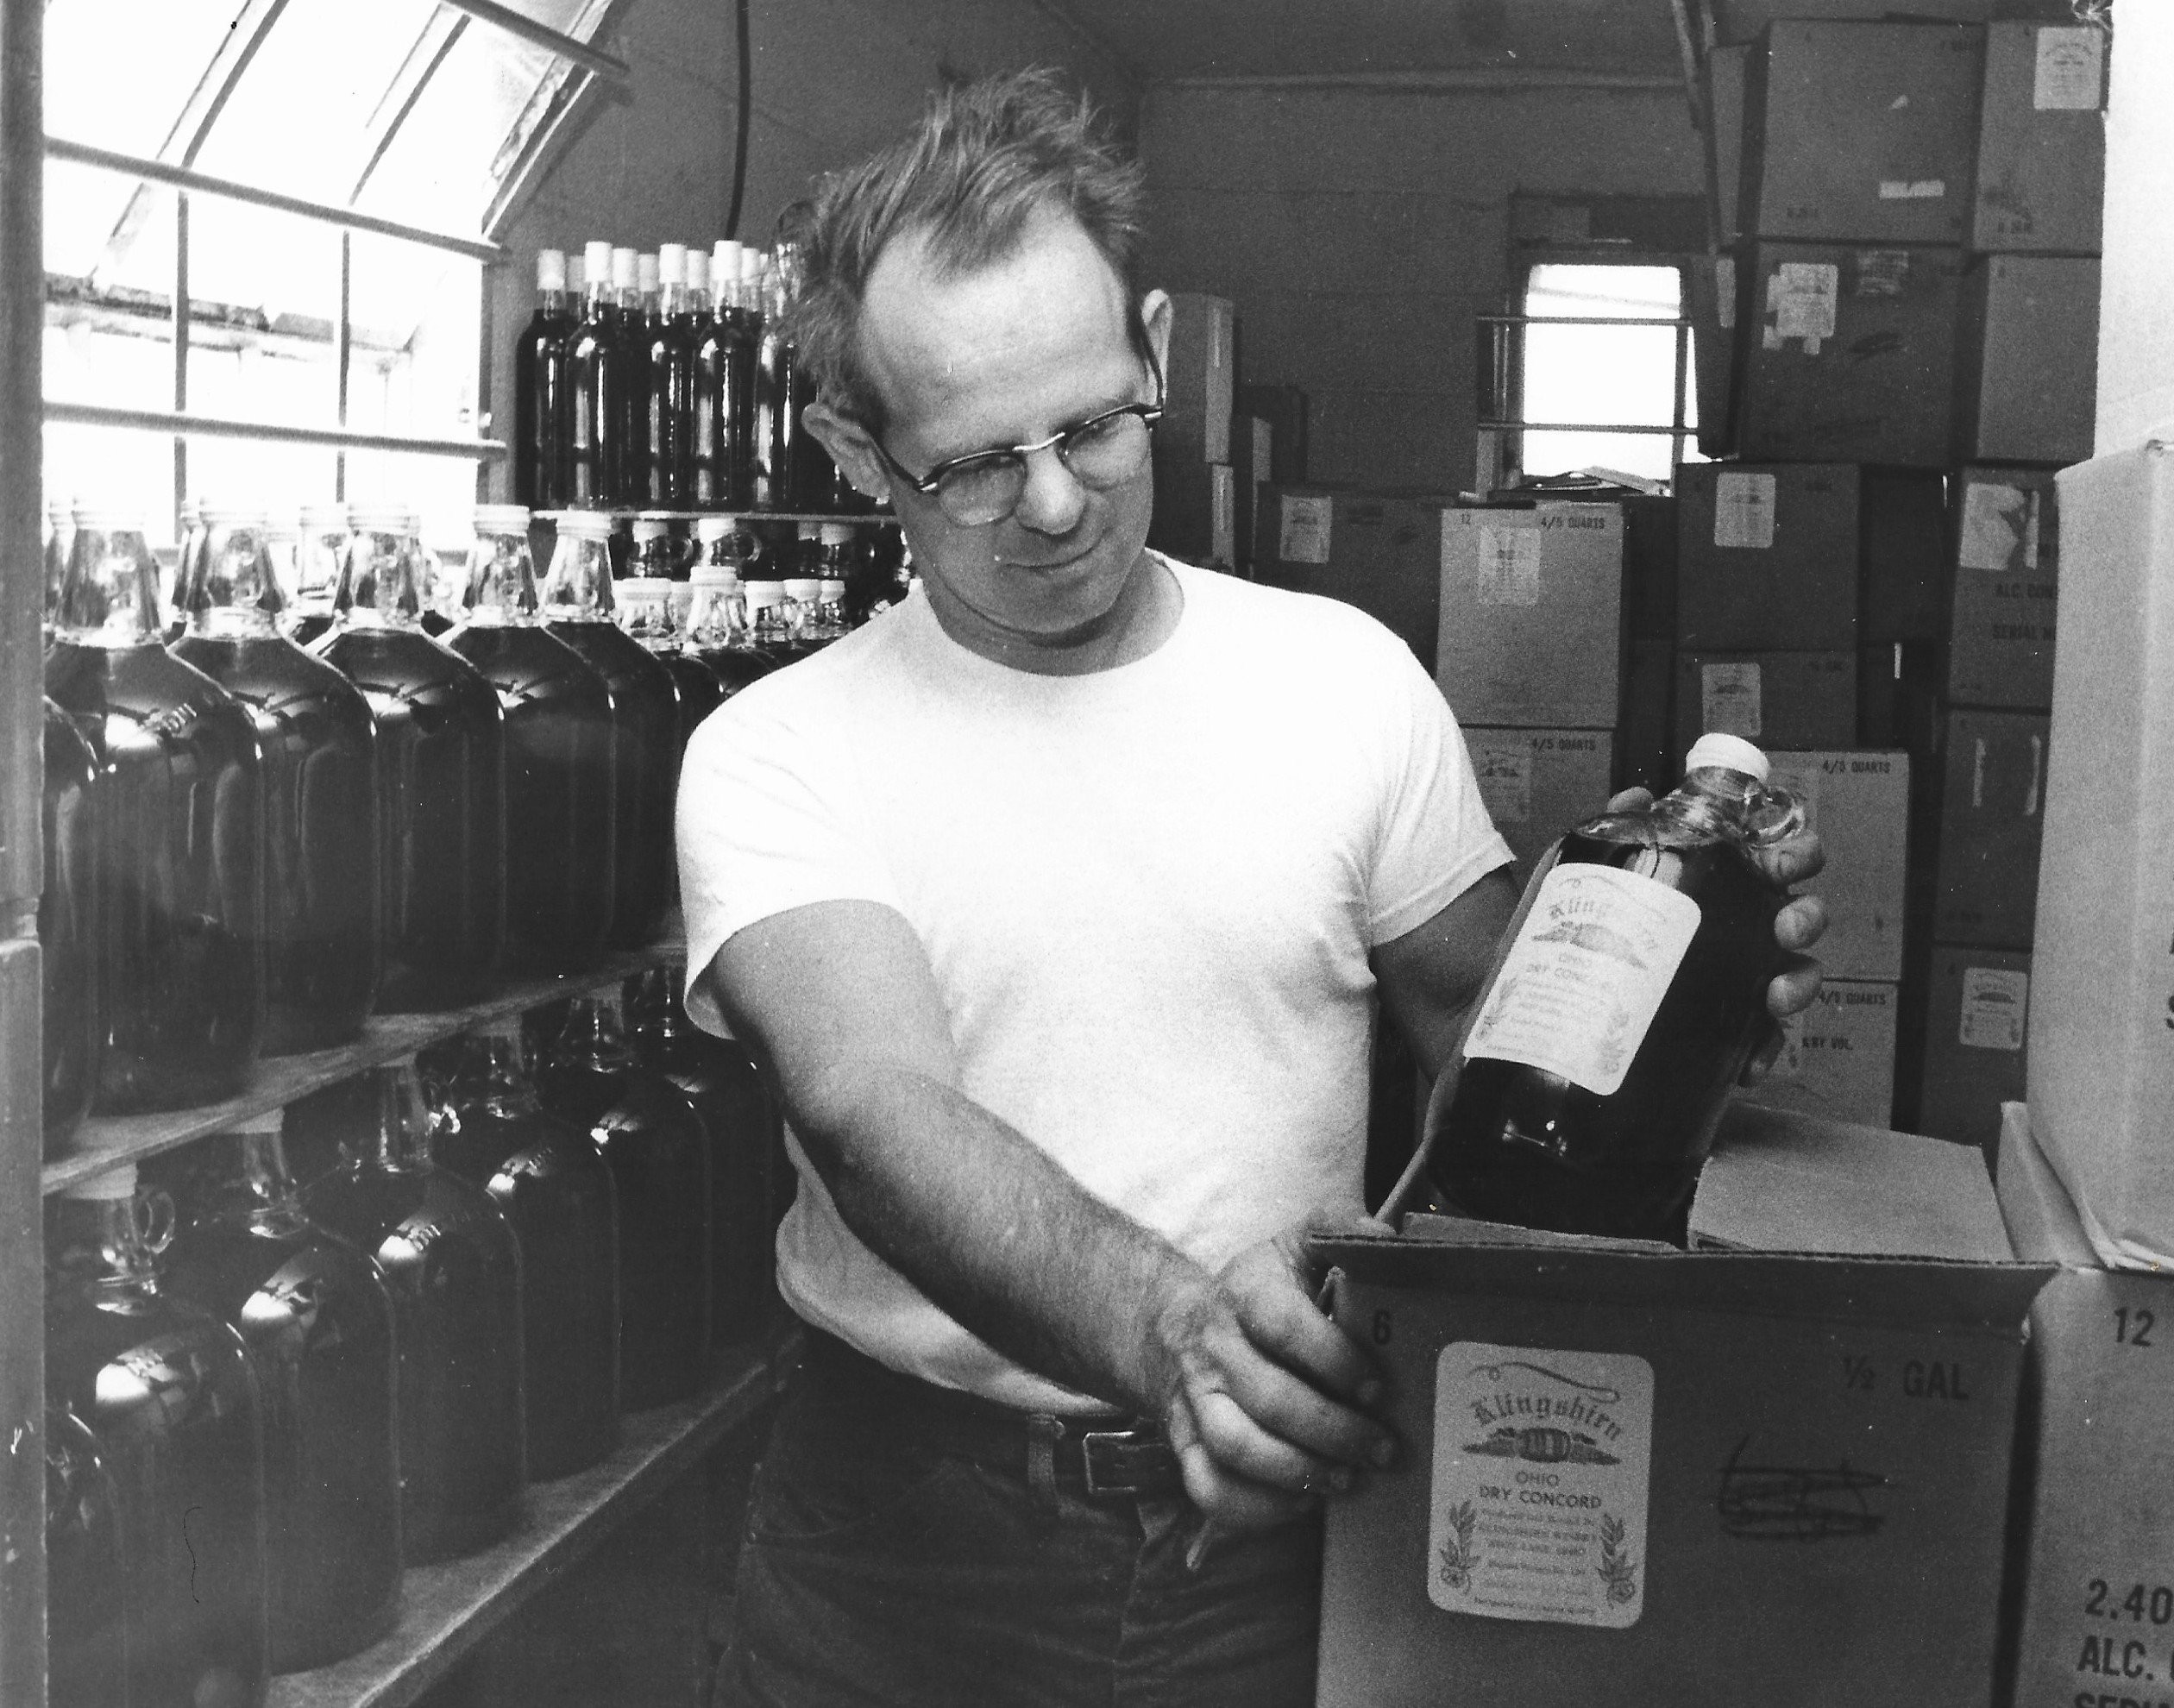 Allan Klingshirn putting a wine bottle in a case